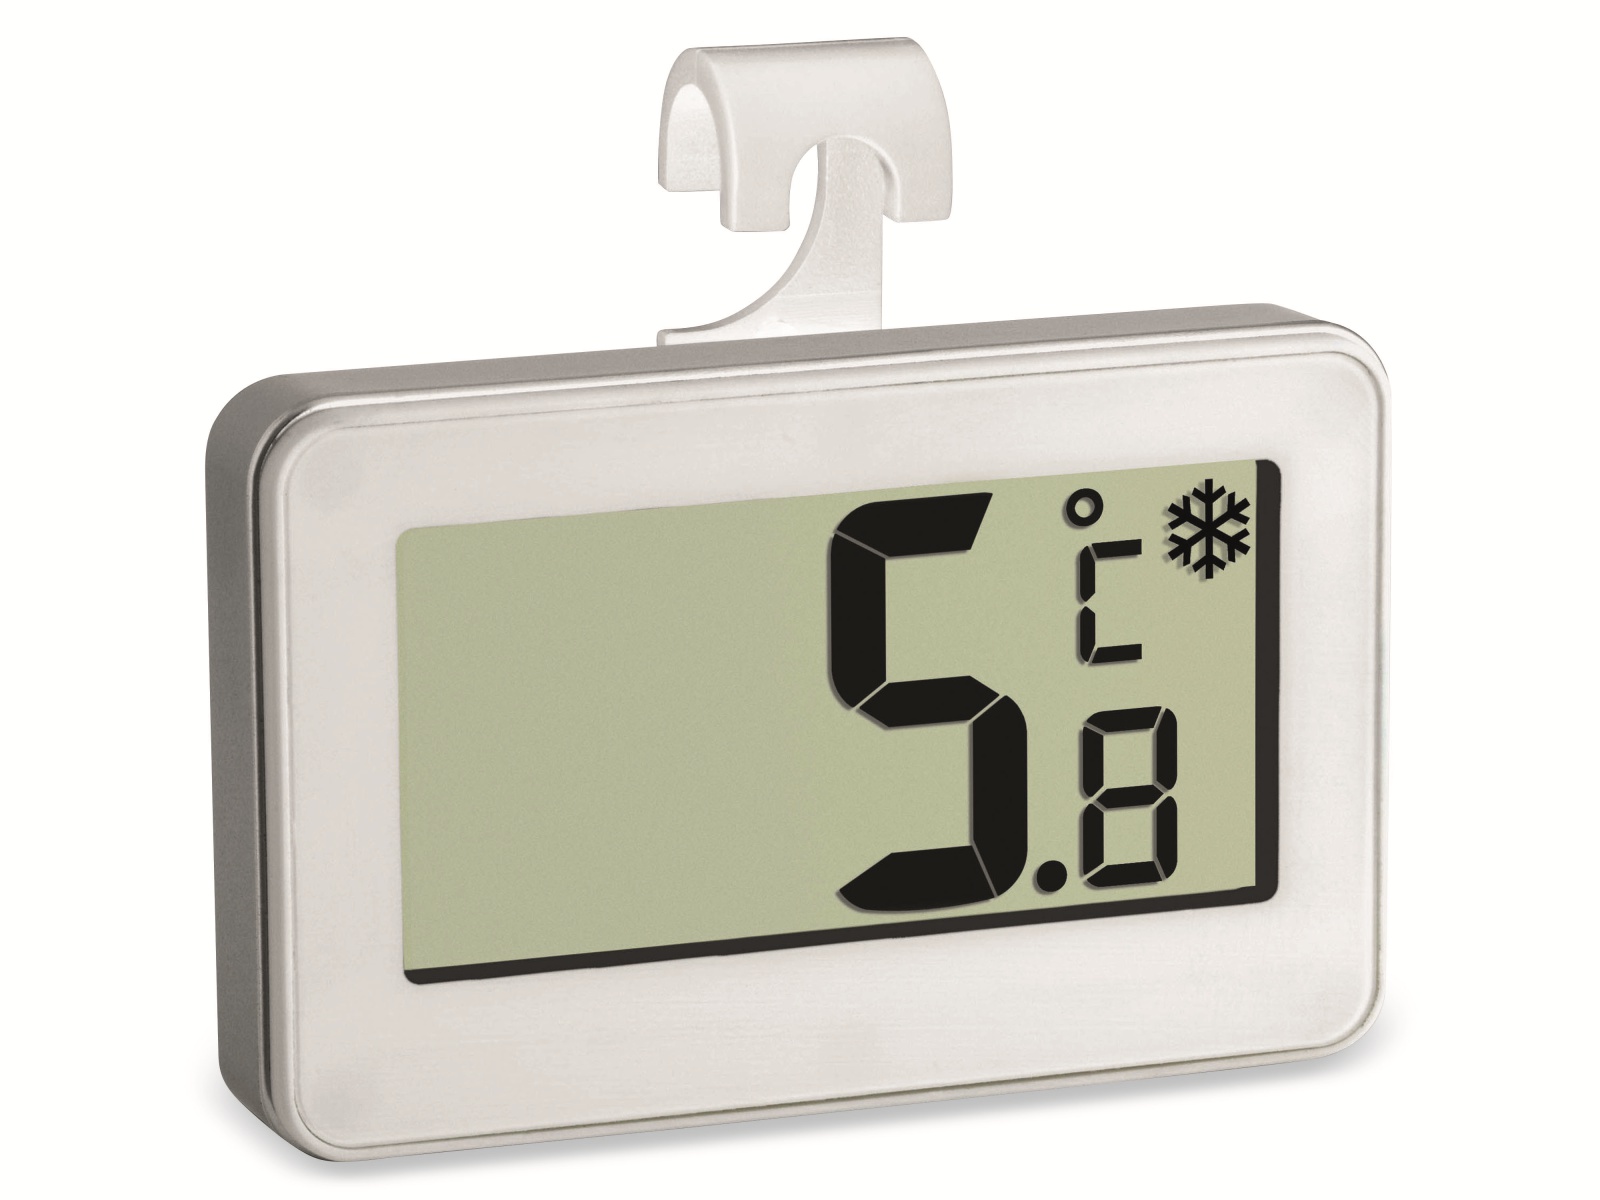 TFA Digitales Thermometer 30.2028.02, weiß